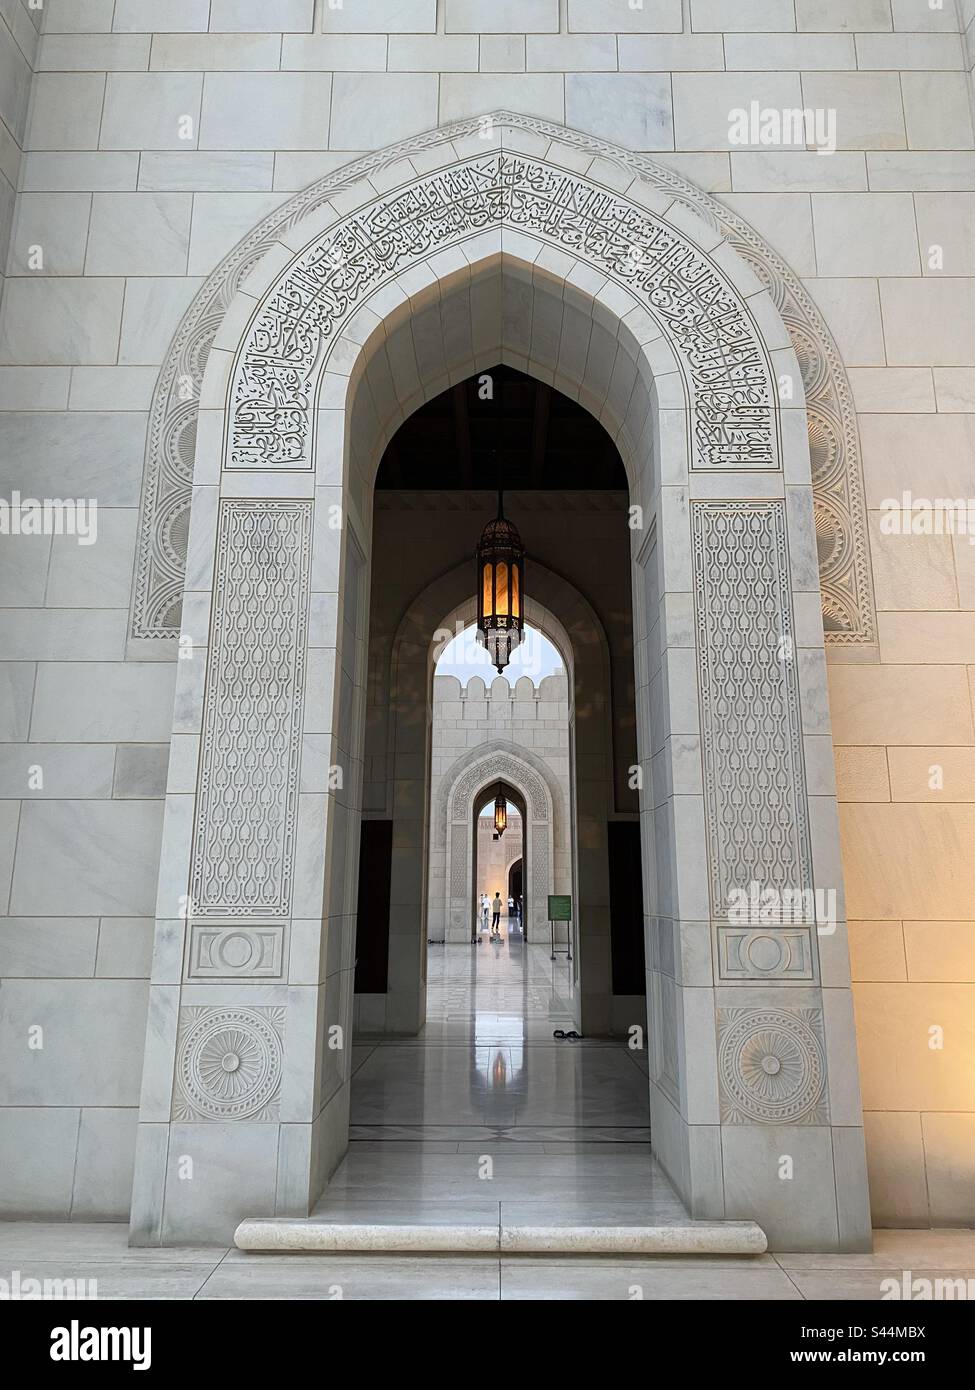 Islamische Architektur, islamisches Gebäude, Moschee in Oman, Eingang der Moschee Stockfoto